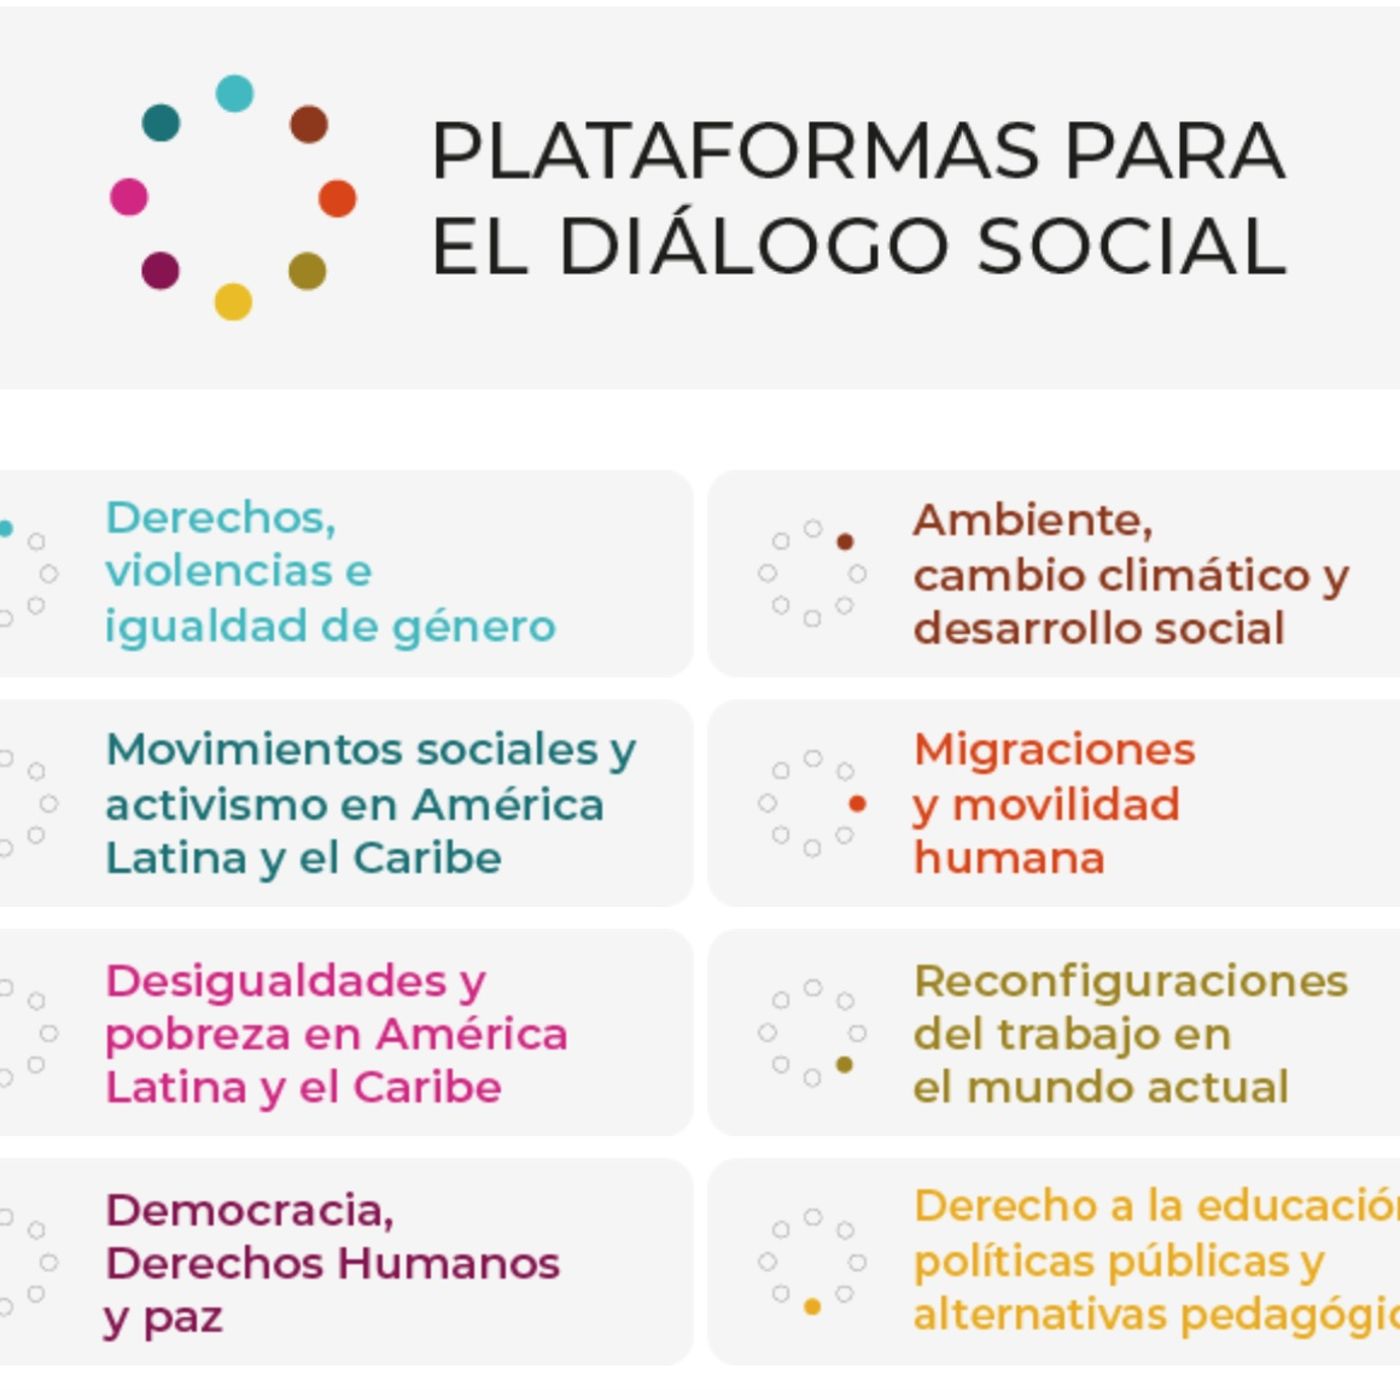 Un recorrido por las Plataformas para el Diálogo Social de CLACSO, por Karina Batthyány